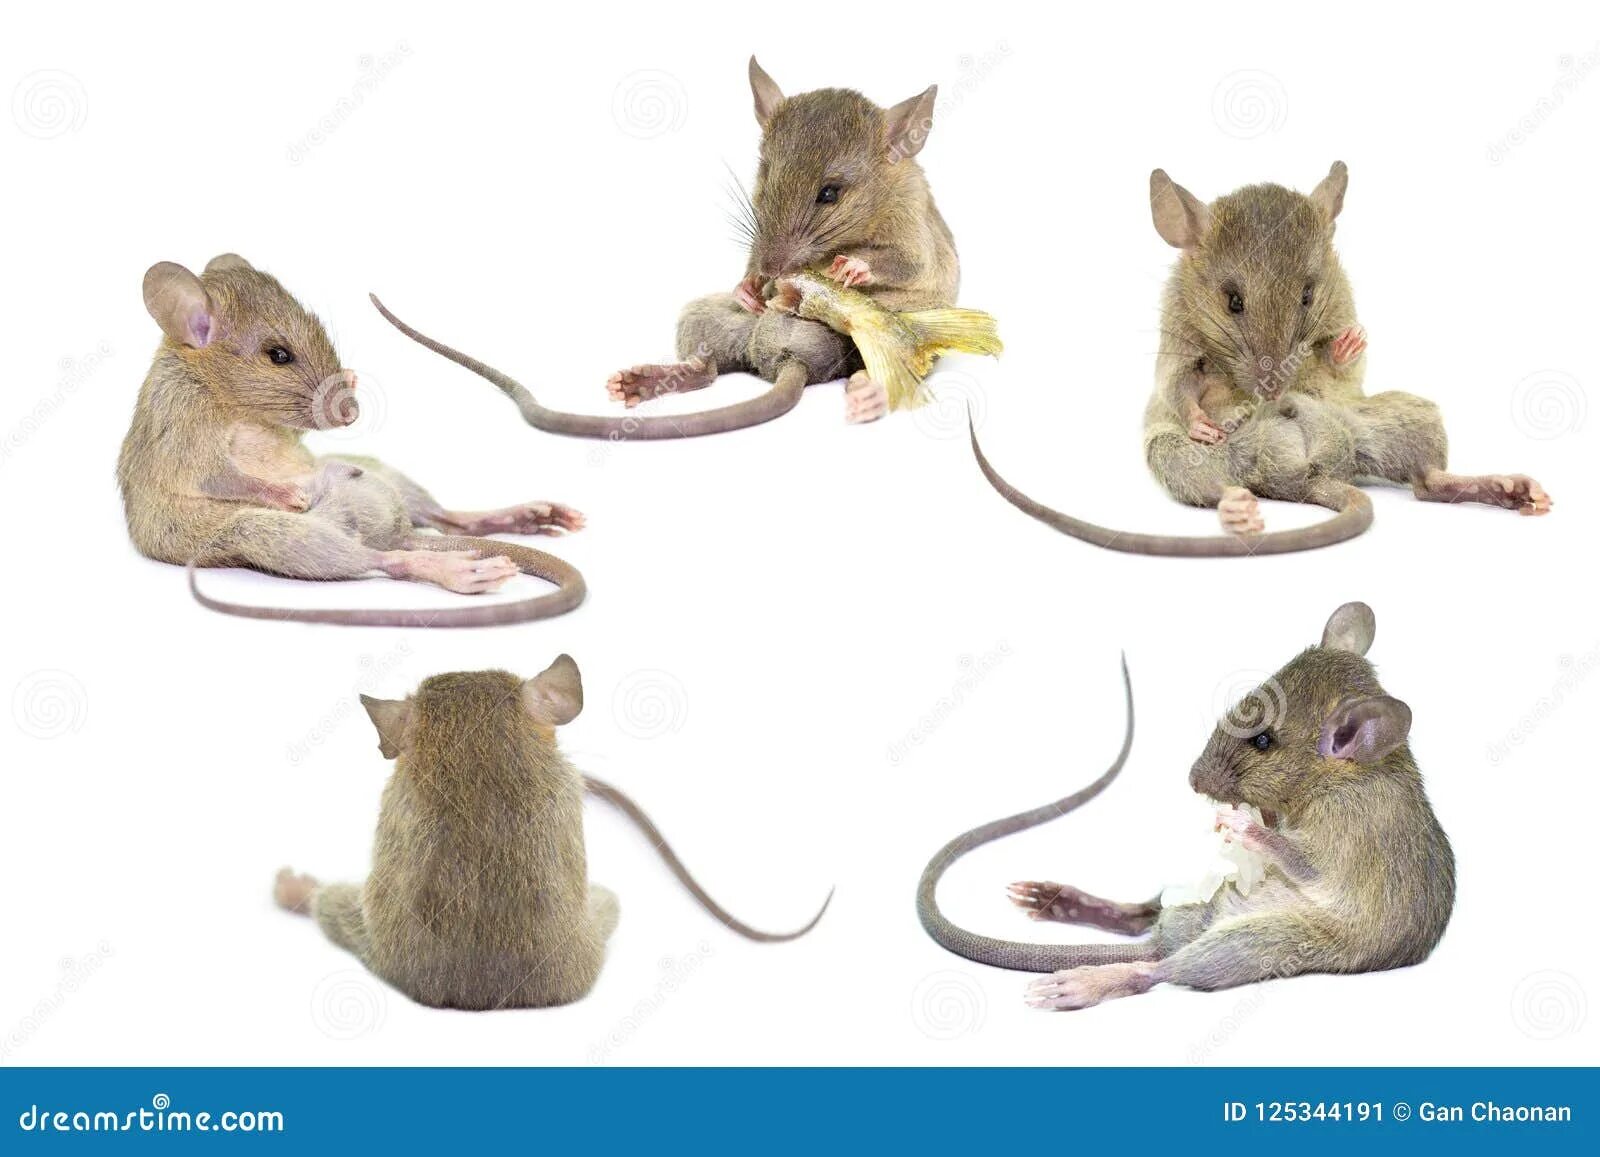 Мышь и крыса разница. Различие мыши и крысы. Мышки и крыски различия. Маленькая крыса и мышь. Как отличить мышь